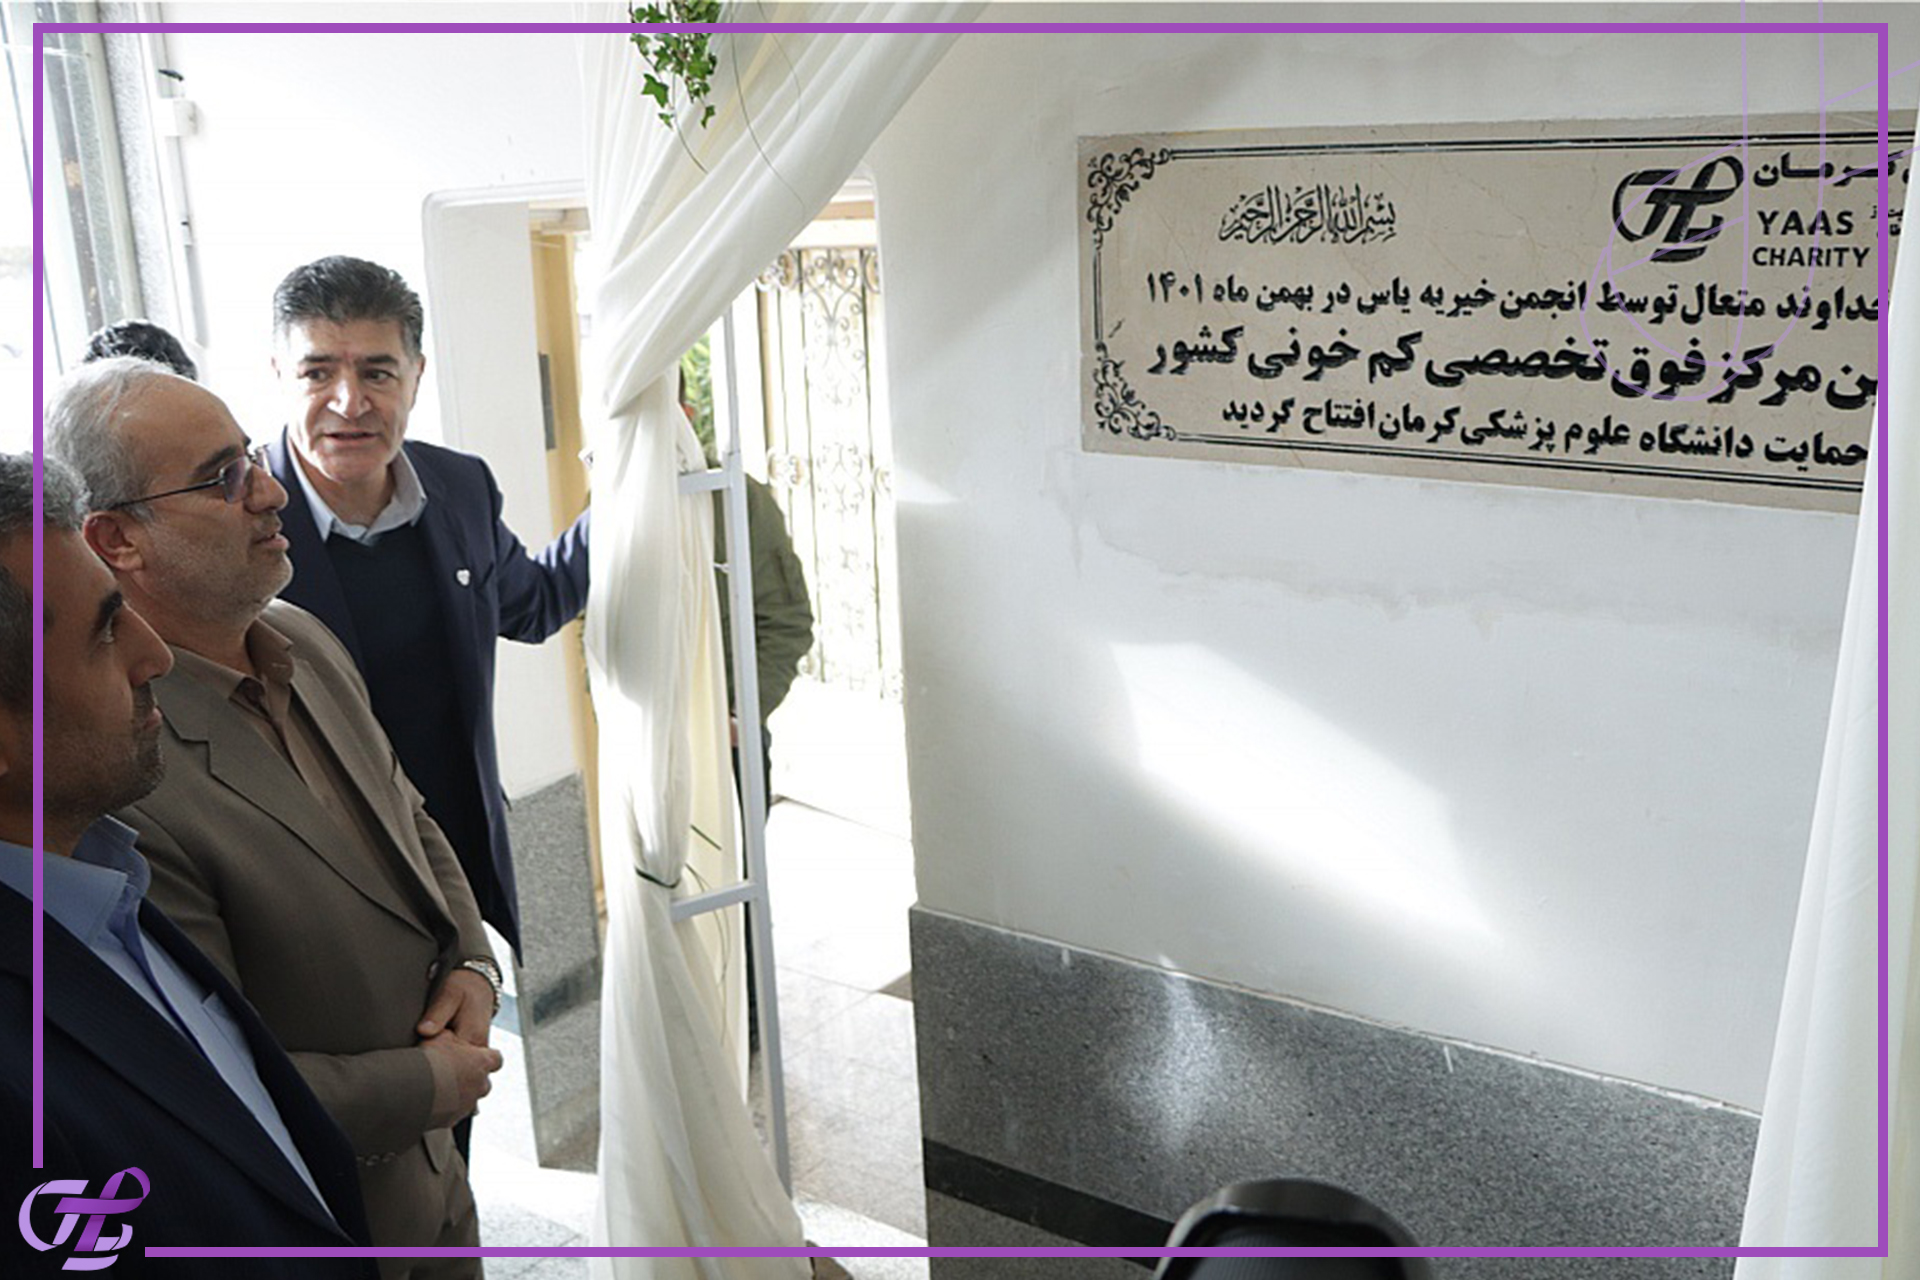 افتتاح اولین مرکز فوق تخصصی کم خونی کشور در کرمان